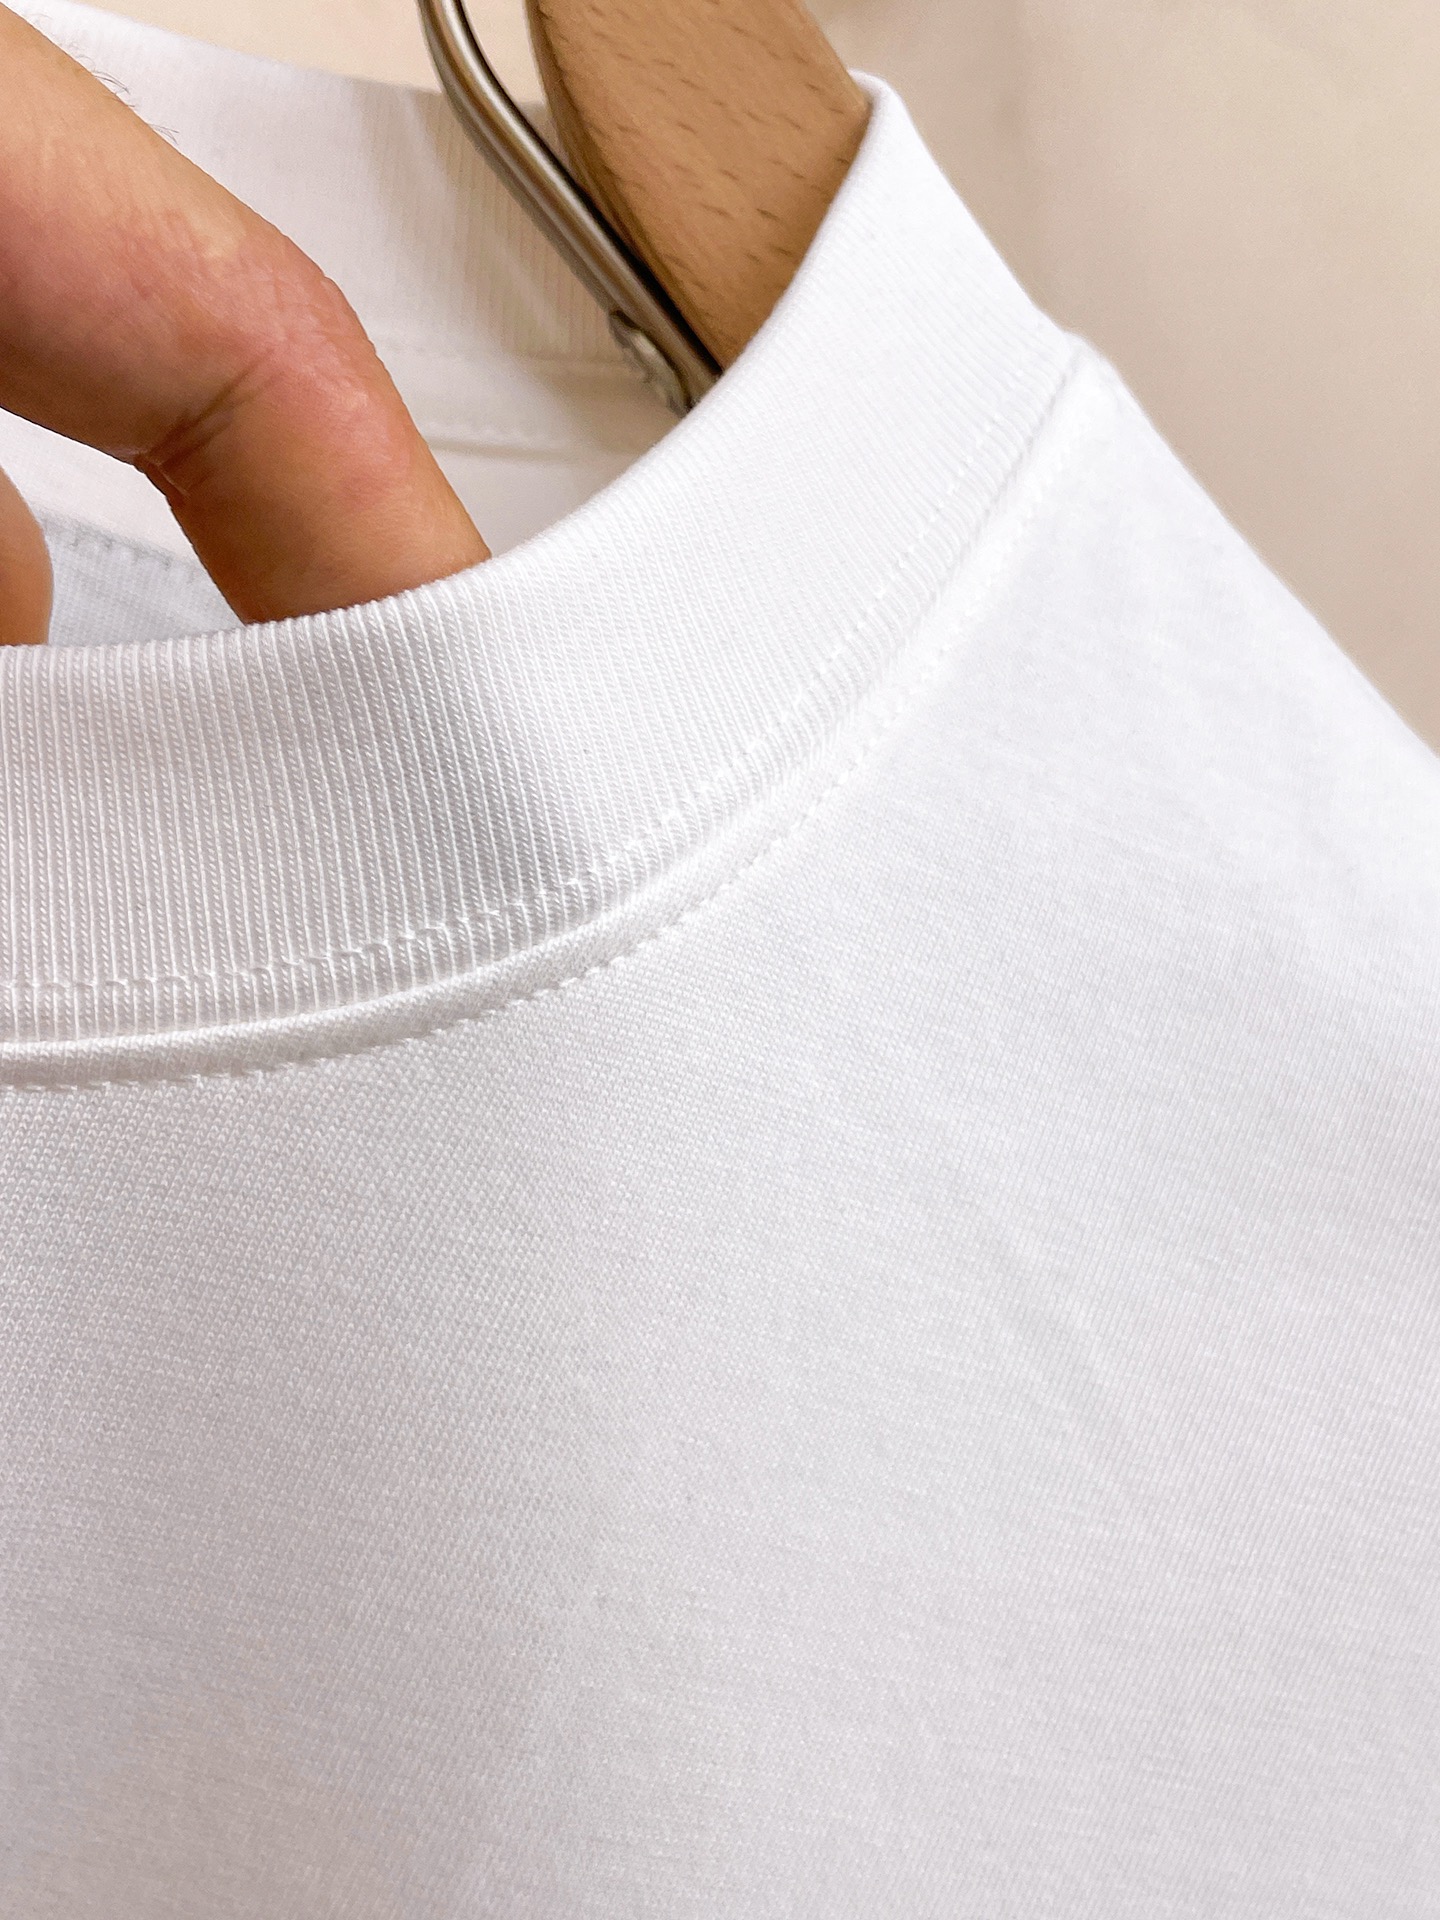 驚きの破格値人気の レディースプラダtシャツn級品 通気性 ブランドの特徴 優れたデザイン_4